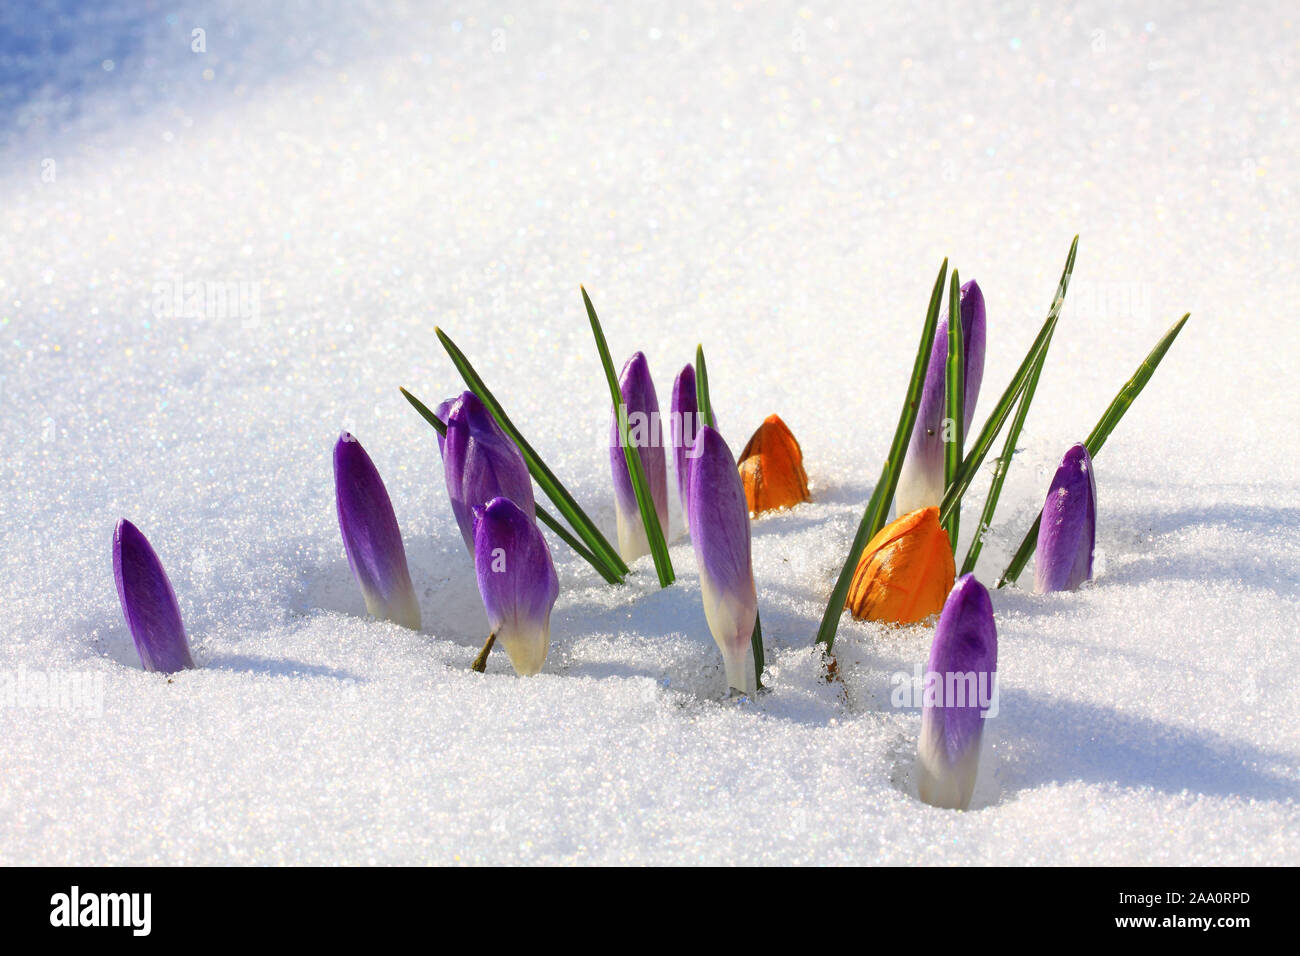 Krokus (Crocus neapolitanus), geschlossene Blüten schieben sich durch den Schnee Stock Photo